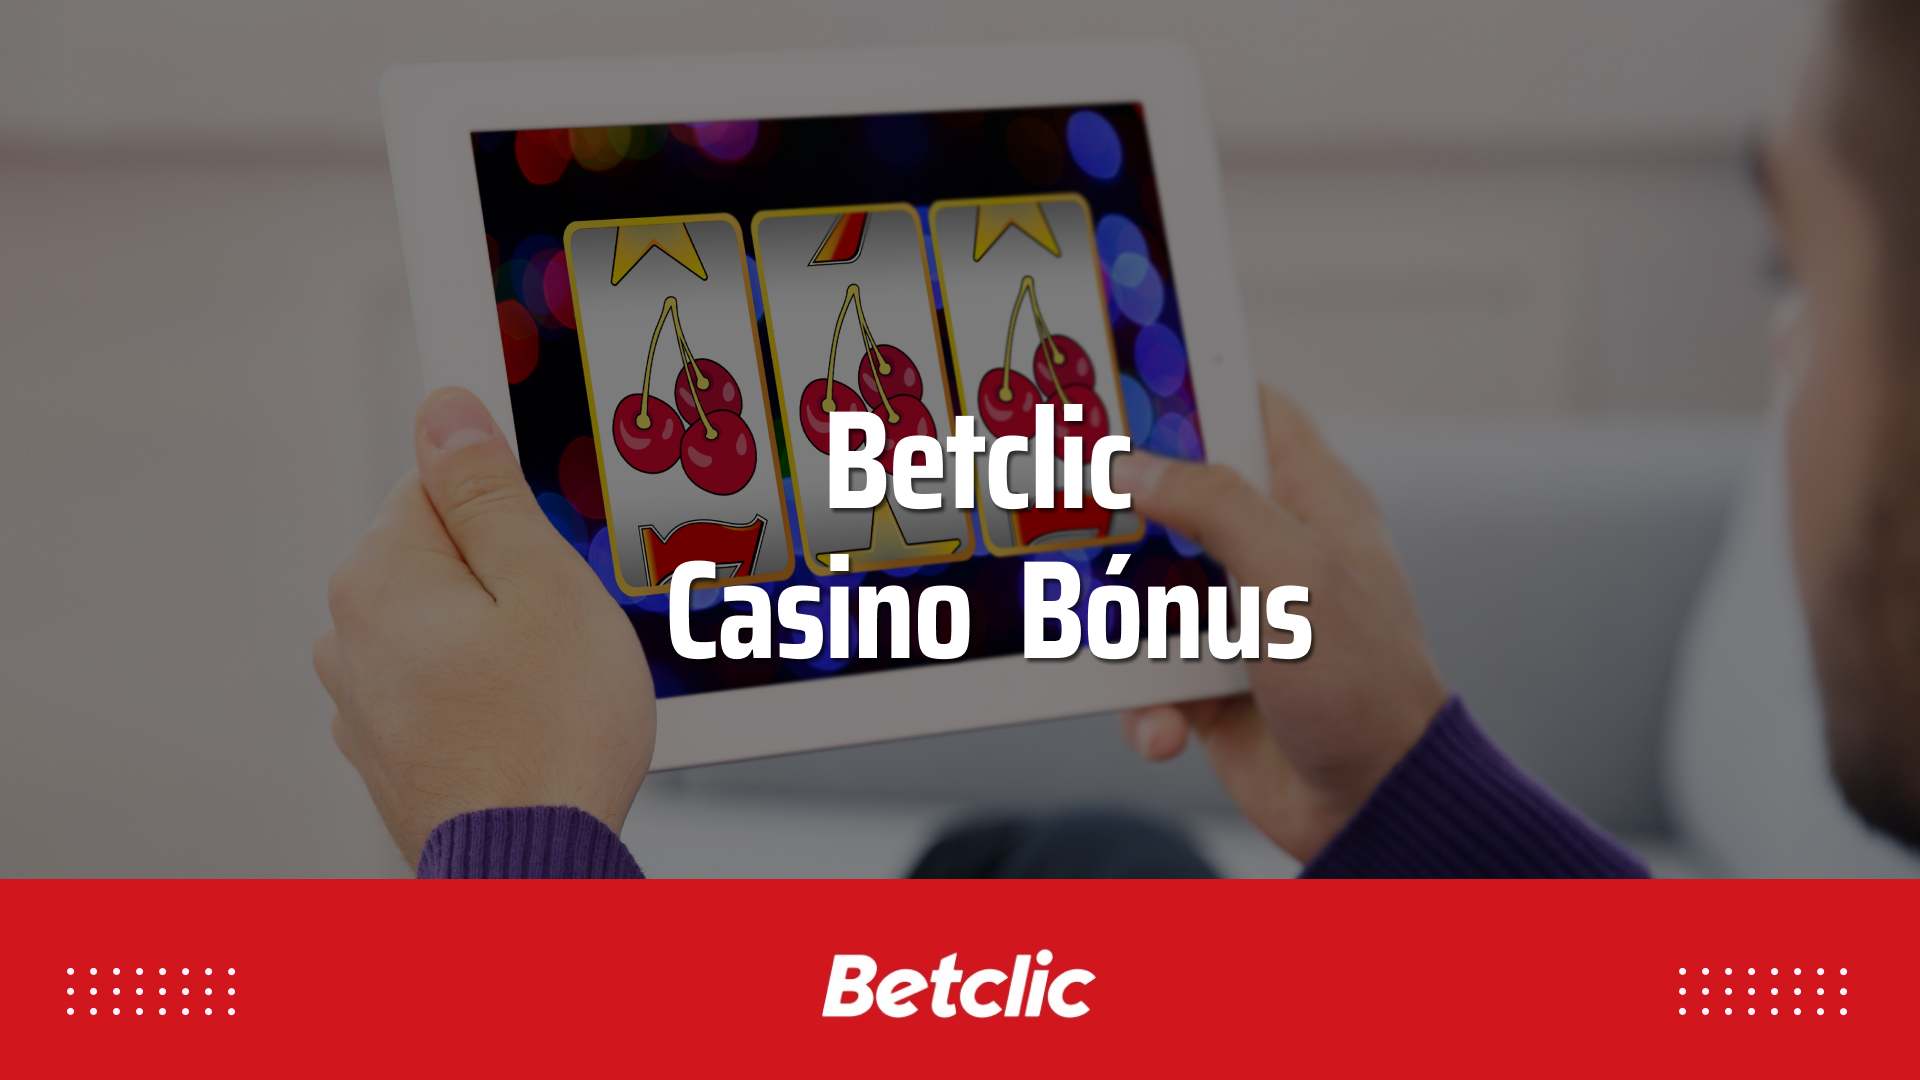 Betclic casino bónus – Saiba como jogar no casino